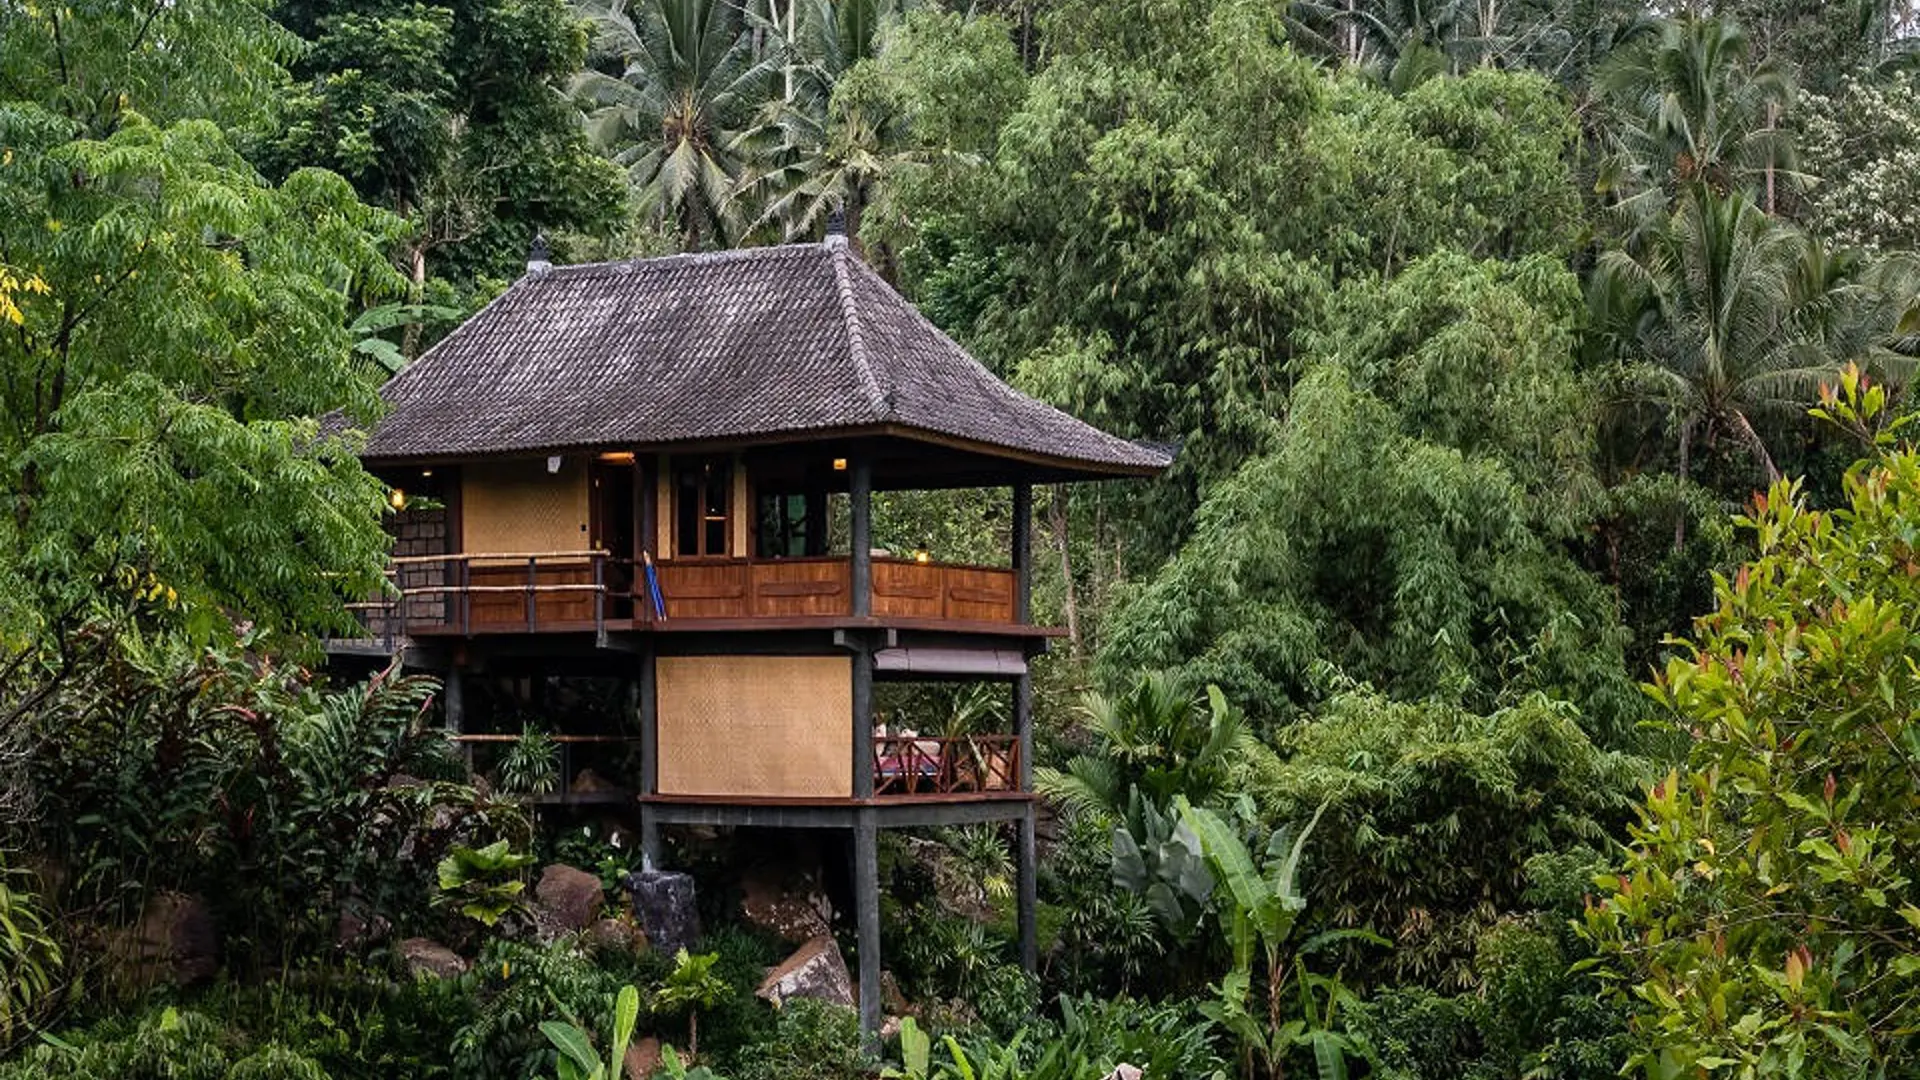 BALI ECO STAY - I har to nætter i fantastiske omgivelser i junglen på Bali Eco Stay.